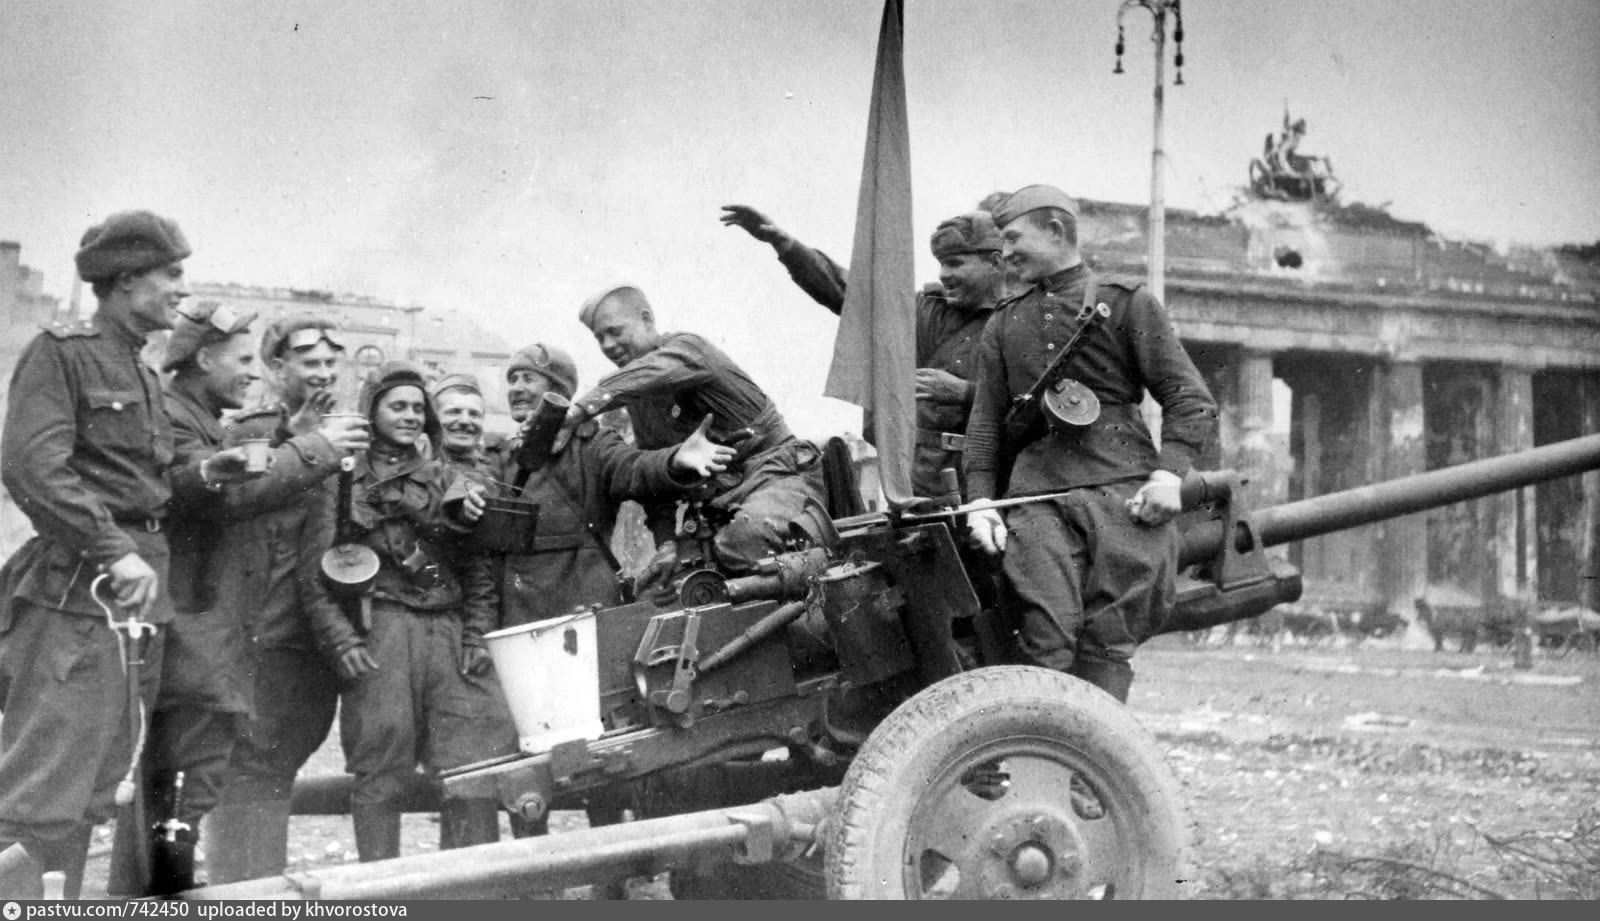 Войны после 45 года. 45 Артиллерия ВОВ 1941-1945. Техника Победы Великой Отечественной войны 1941-1945. ЗИС-2 57-мм противотанковая пушка.